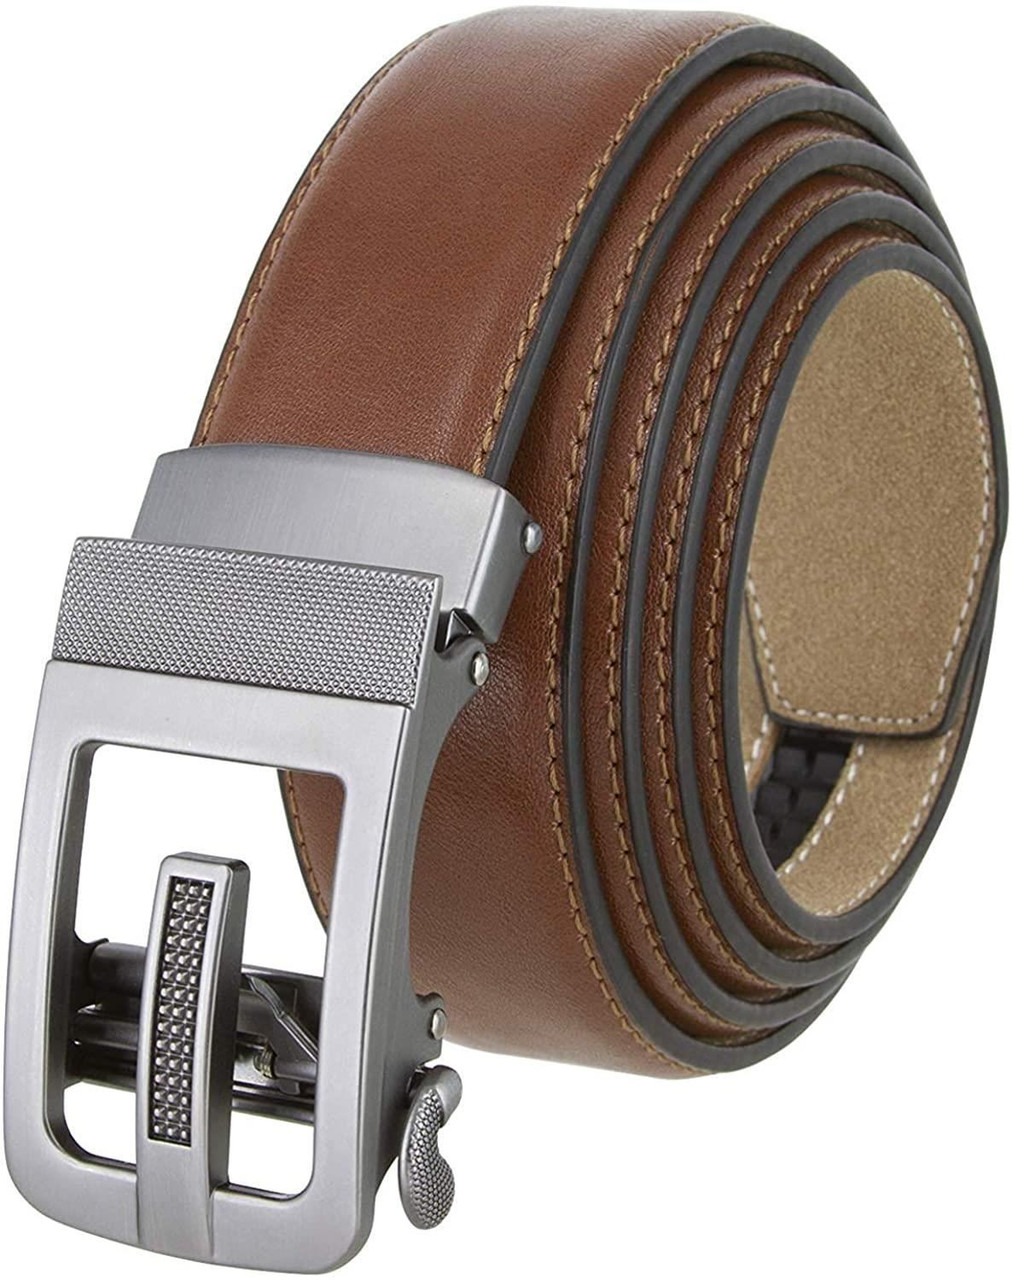 352063 Men's Slide Ratchet Belt Leather Casual Dress Belt 1-3/8